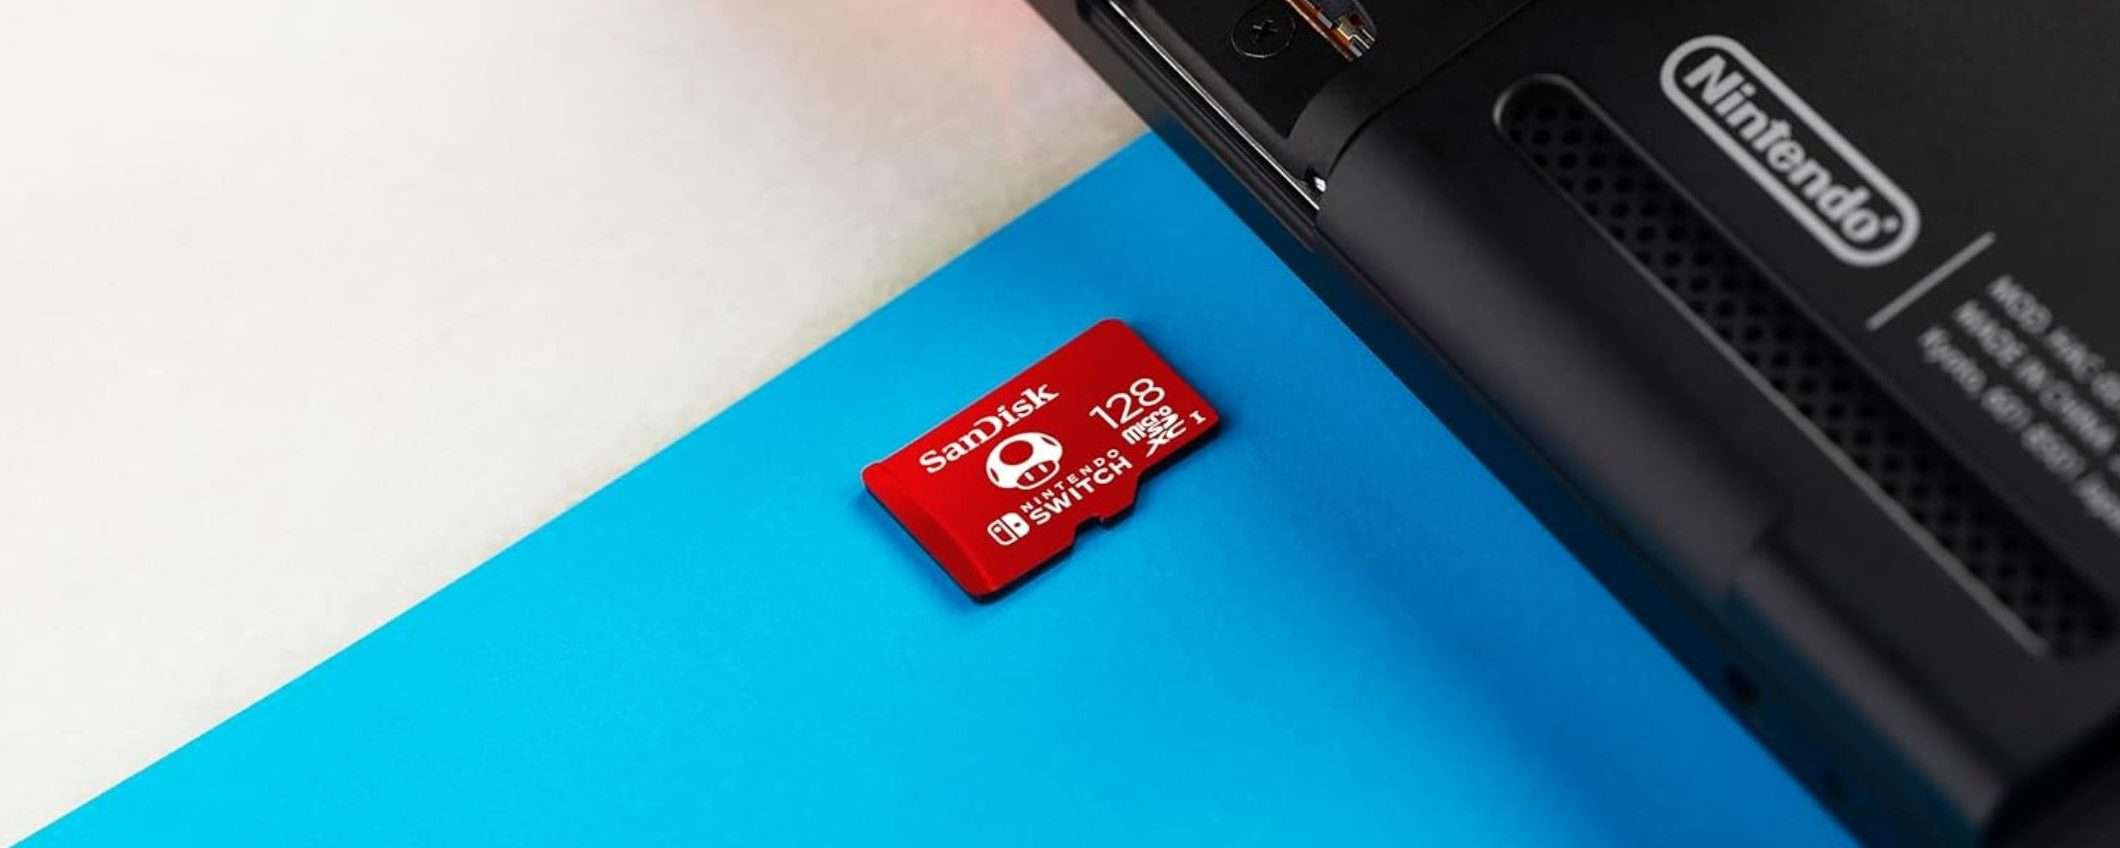 MicroSD 128GB per Switch: SCONTO sulla confezione da 2 pezzi (-26%)